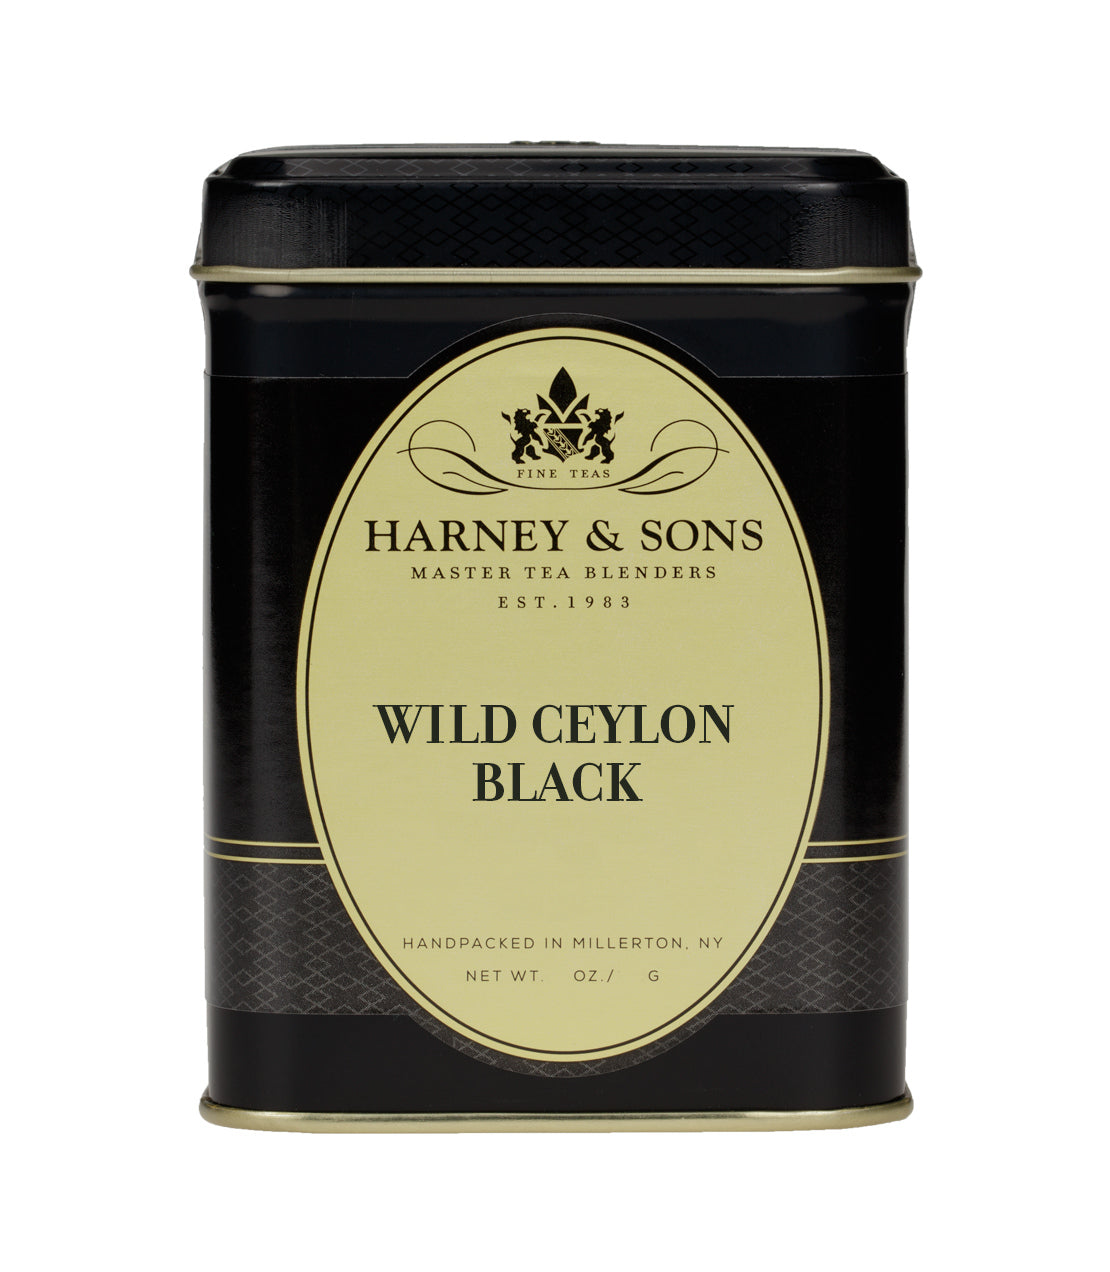 Wild Ceylon Black